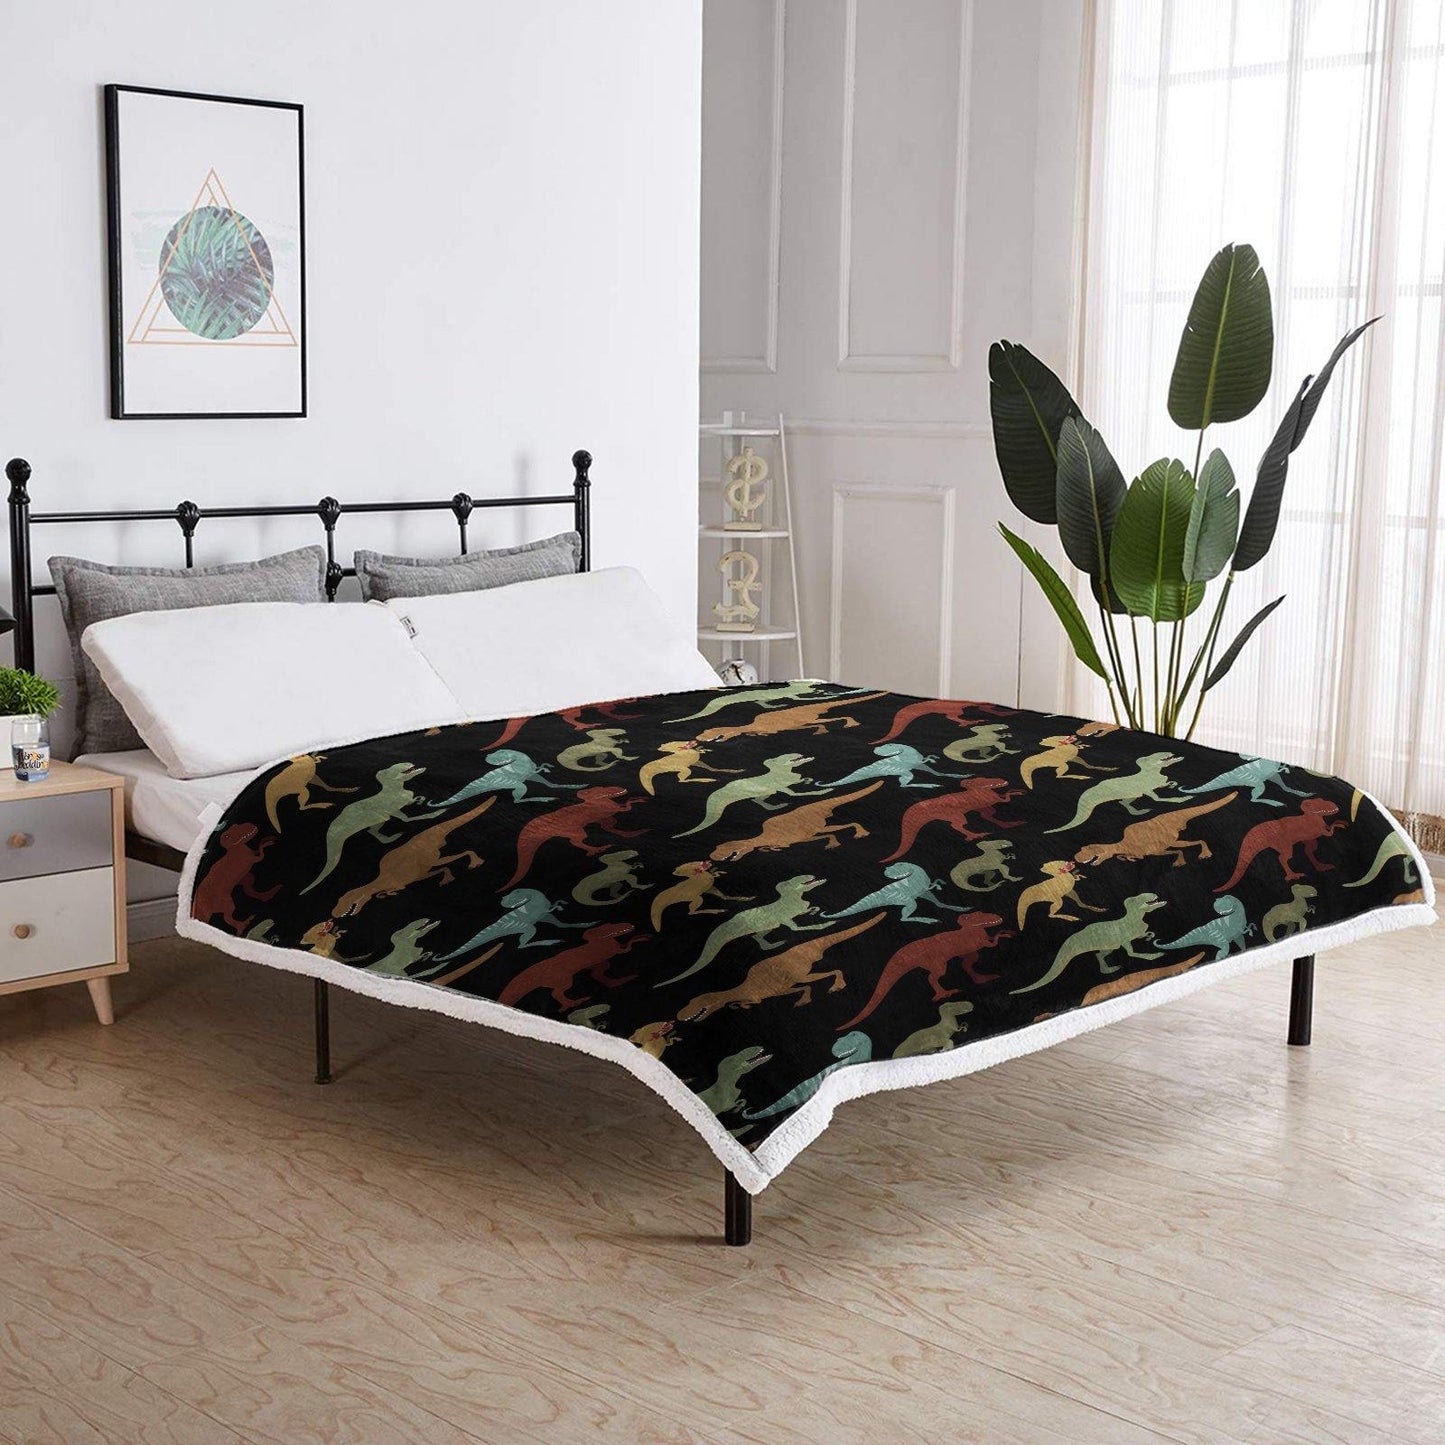 WONGS BEDDING Little dinosaur blanket bedroom living room decoration blanket - Wongs bedding